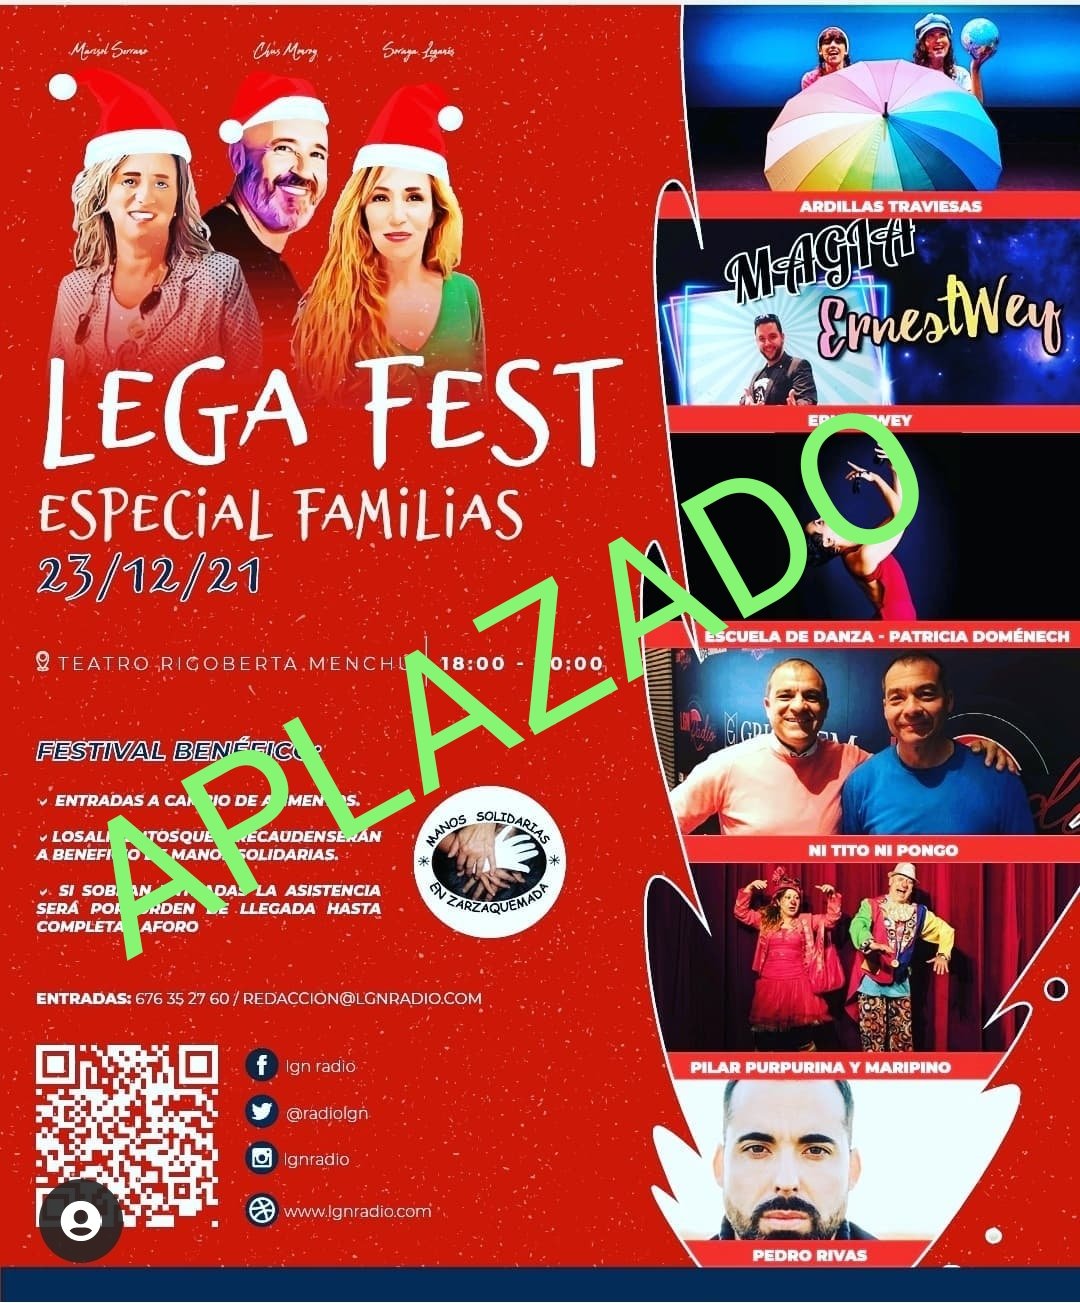 Legafest Especial Familias